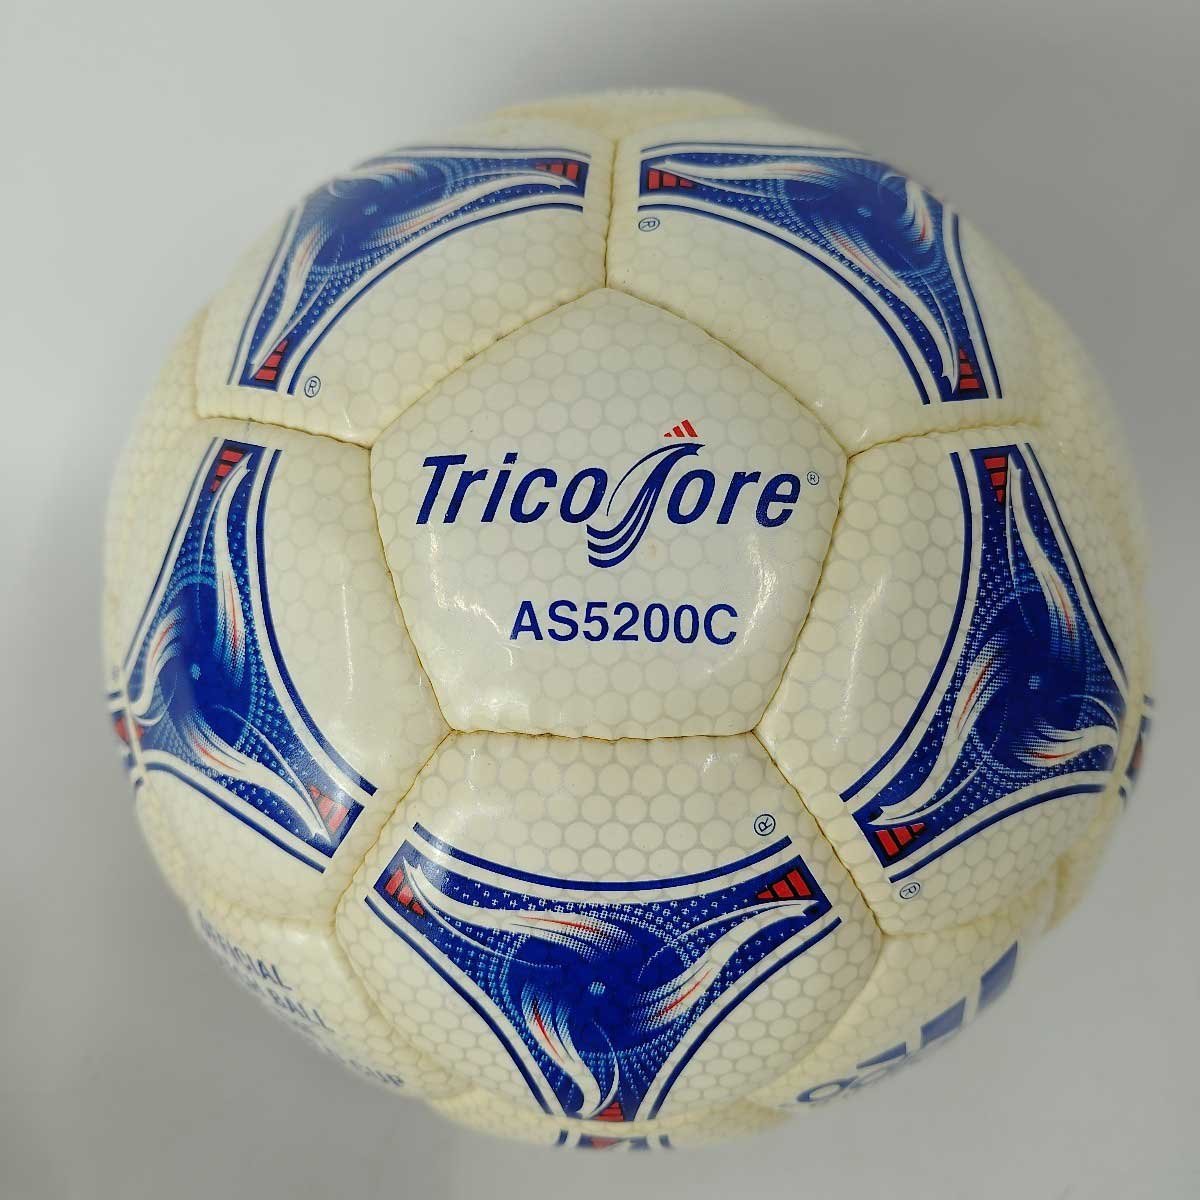 【中古】アディダス フランス ワールドカップ 1998 サッカーボール AS5200C ADIDAS トリコロール 公式球 fifa world cup_画像5